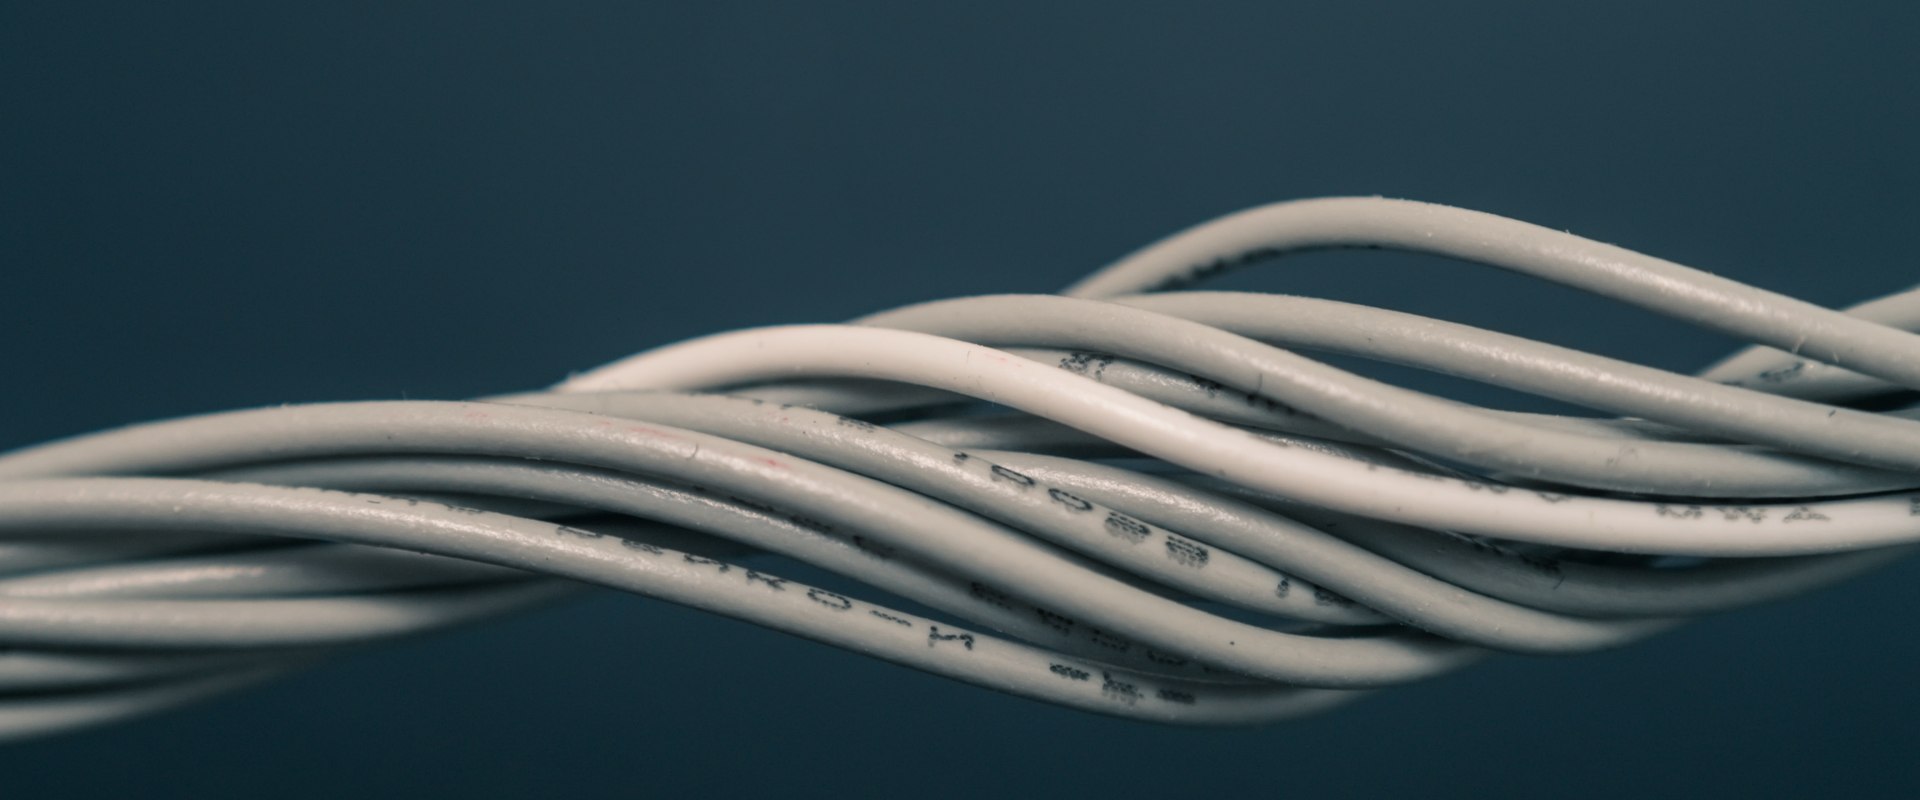 Tot ce trebuie să știți despre utilizarea cablurilor coaxiale pentru conexiunile telefonice